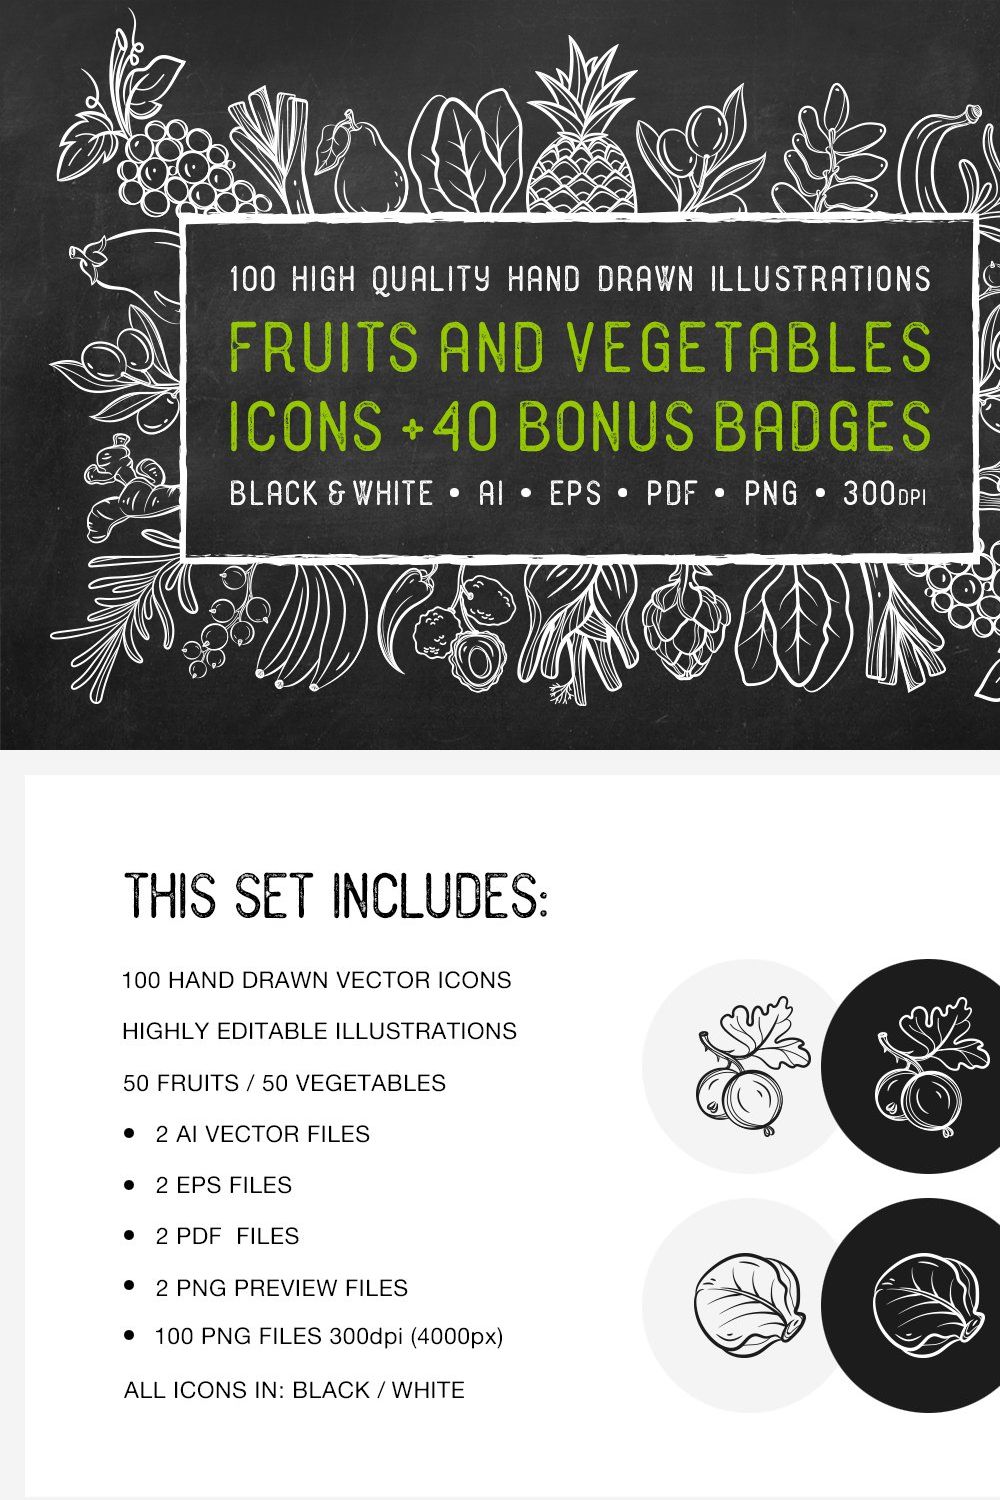 Fruits & Vegetables + Badges pinterest preview image.